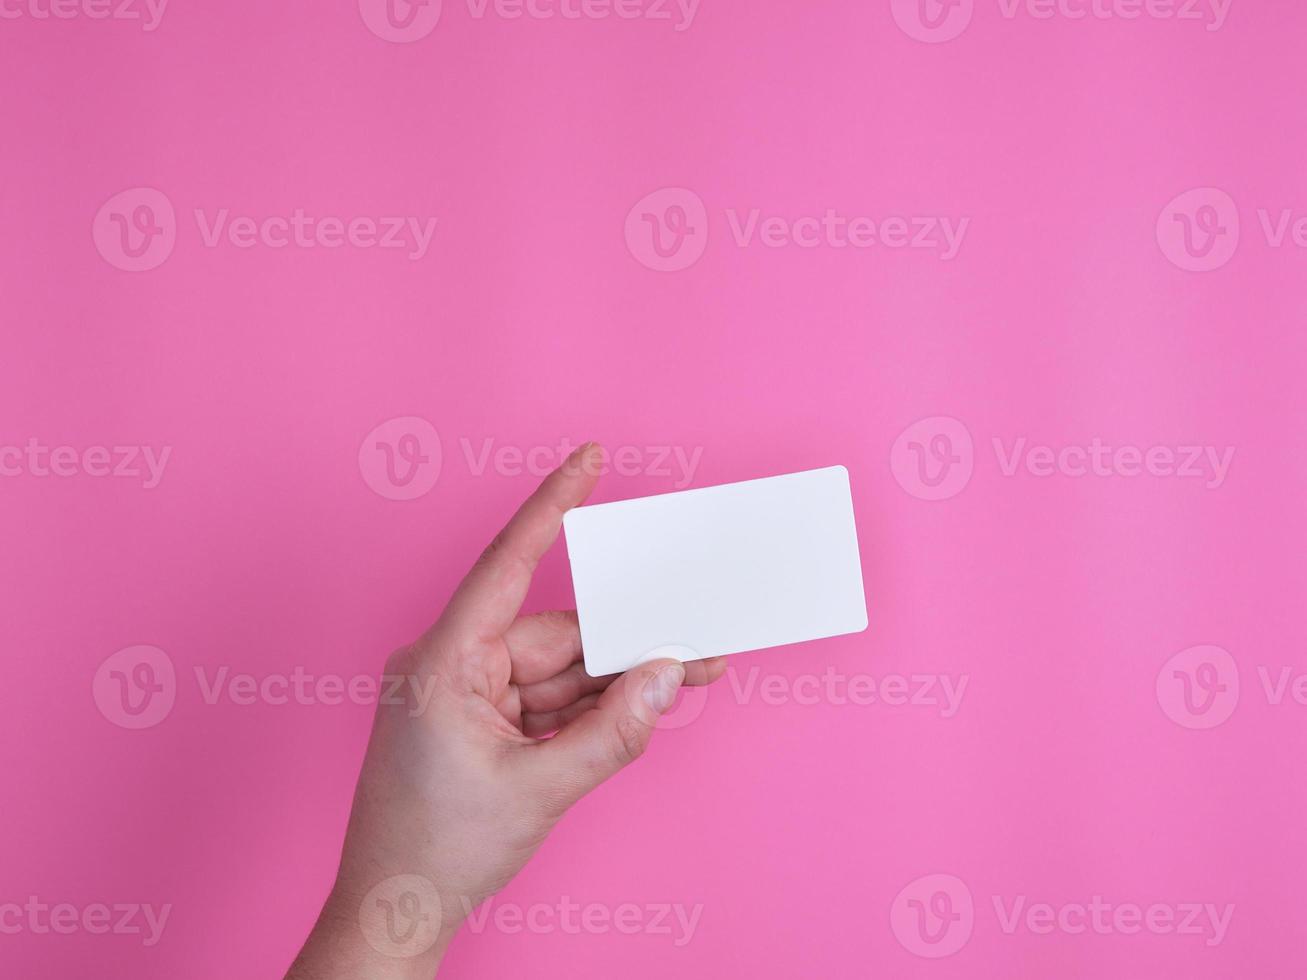 tarjeta de visita rectangular blanca vacía en una mano femenina foto